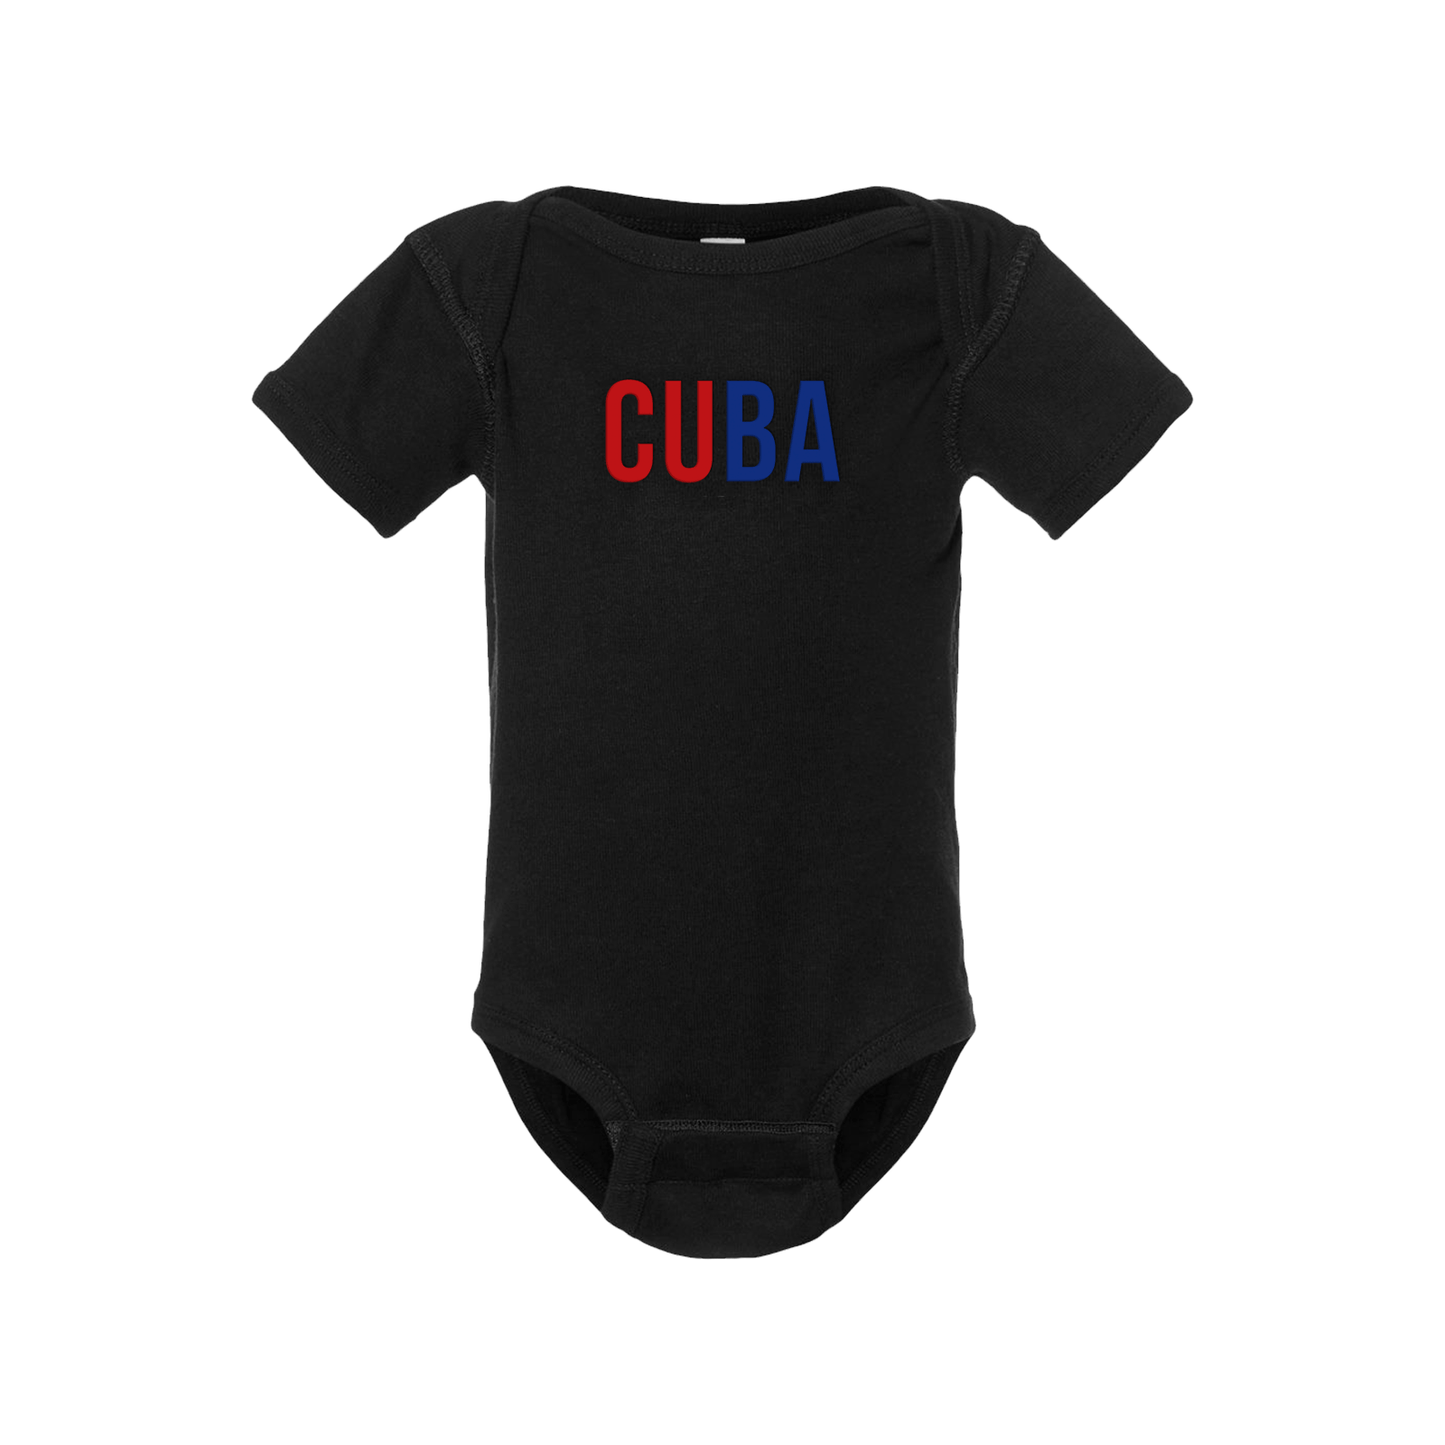 Cuba Short Sleeve Onesie - Babies & Toddlers